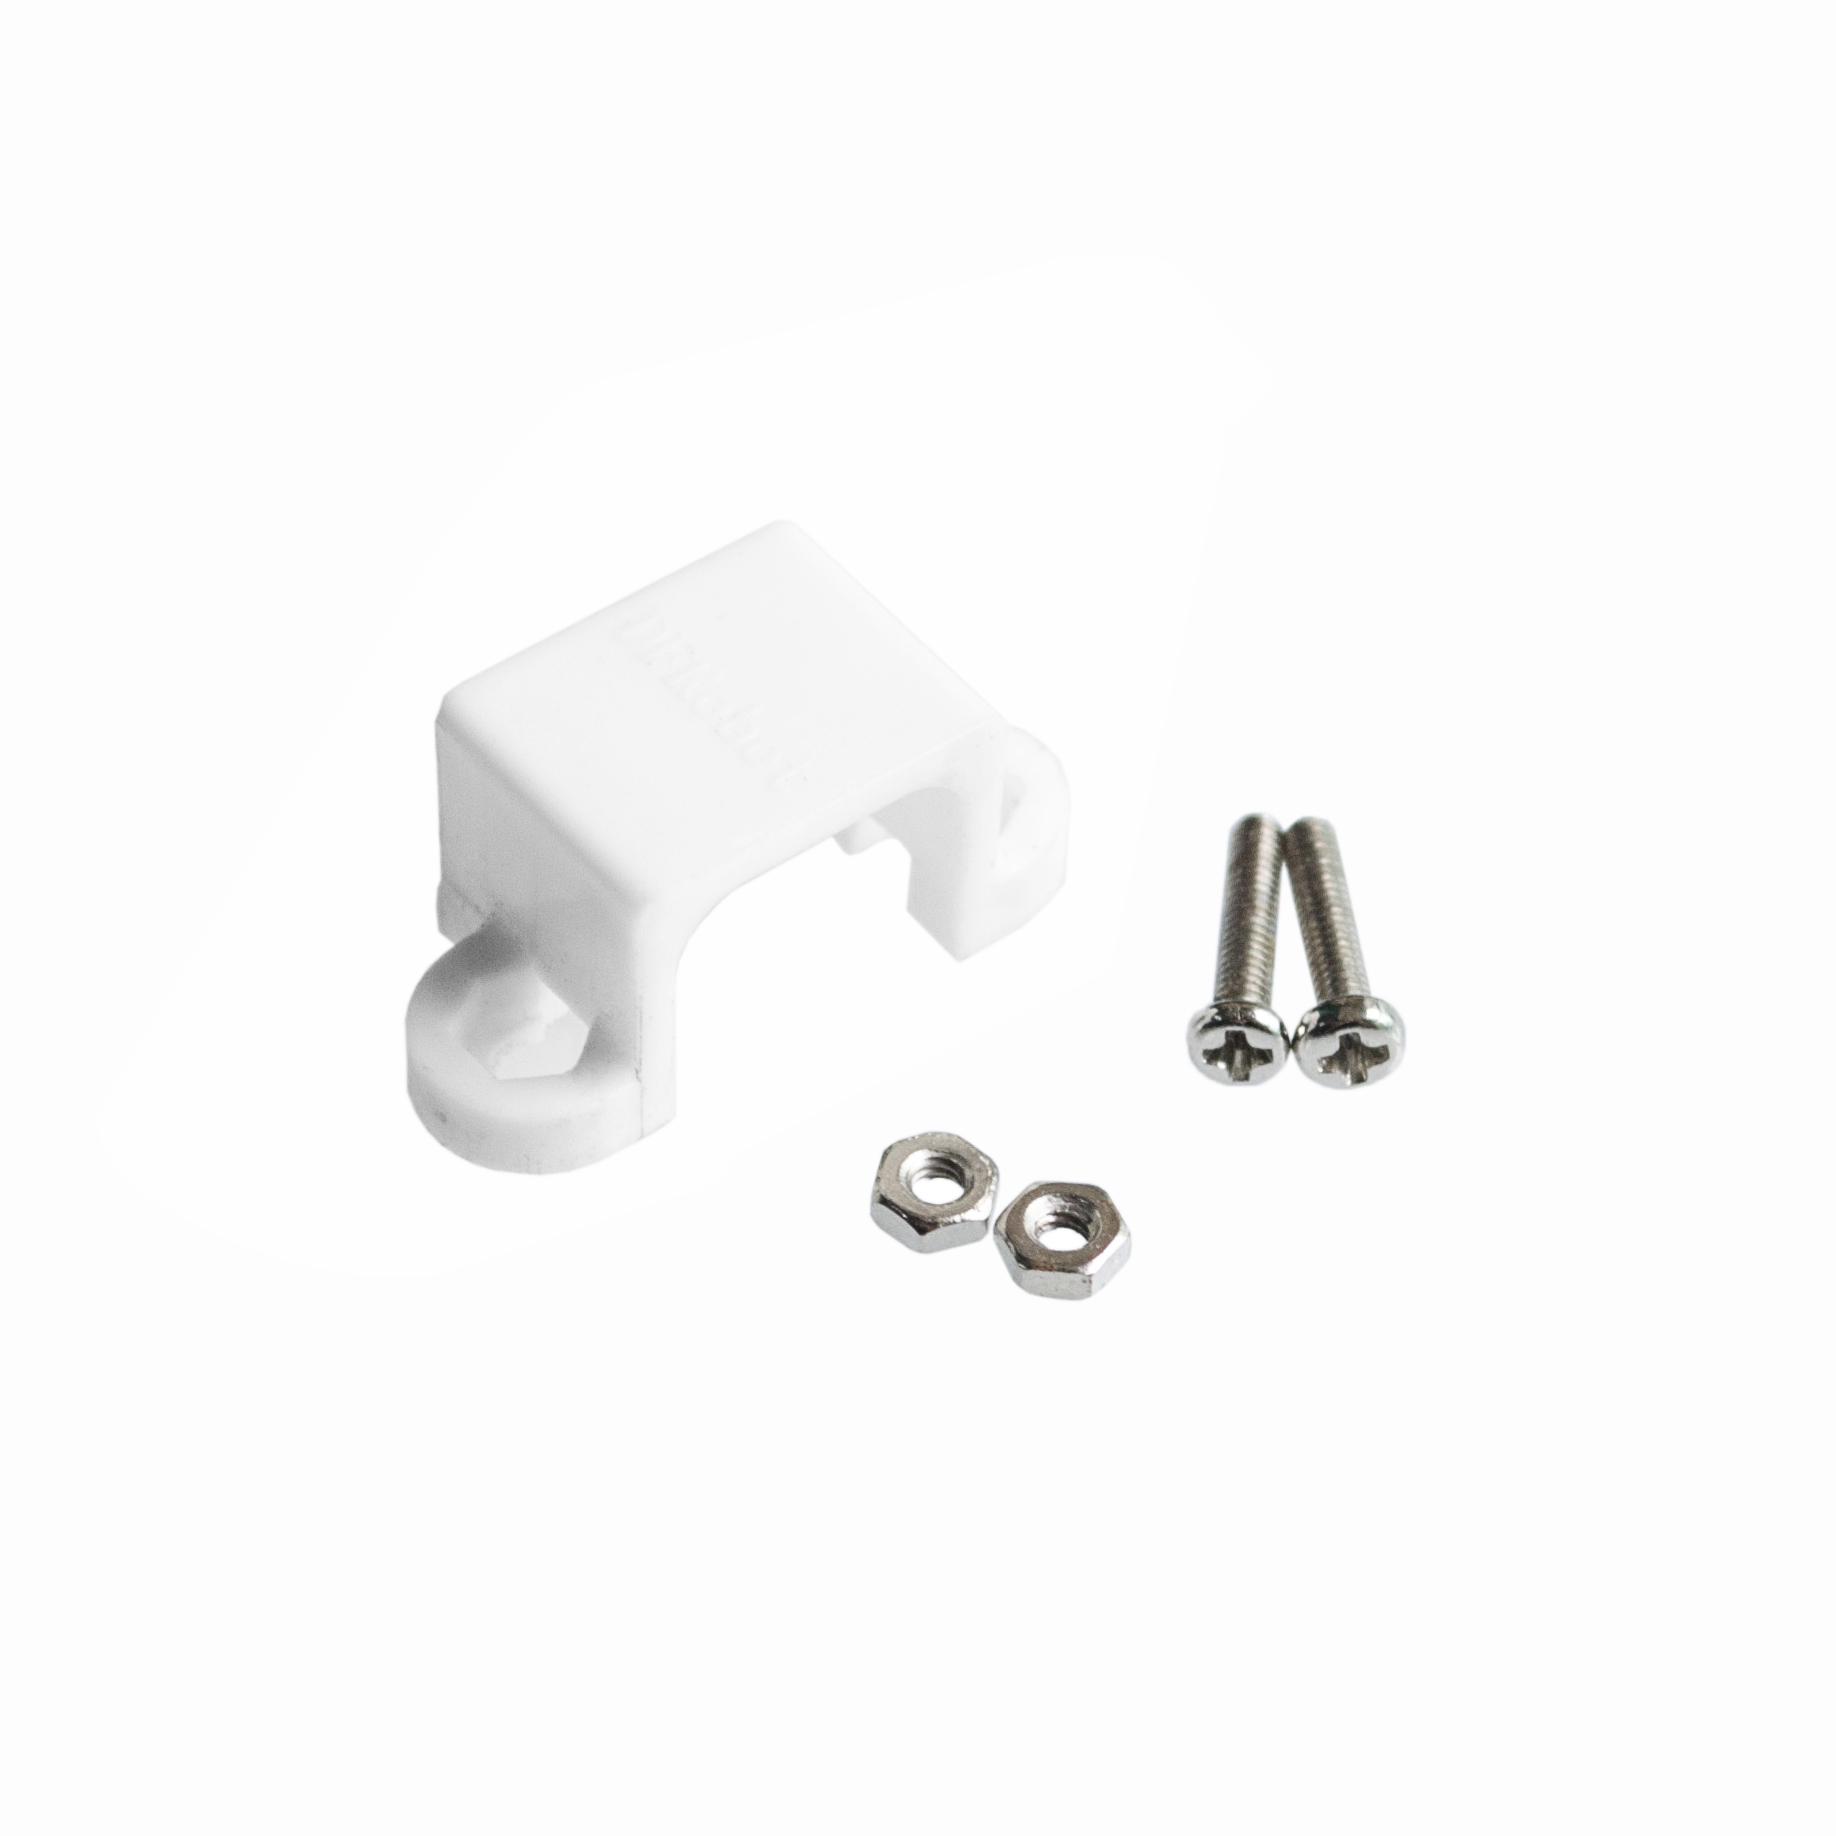 White-Plastic-Motor-Holder-for-N20-N30-Micro-DC-Motor-DIY-Model-Parts